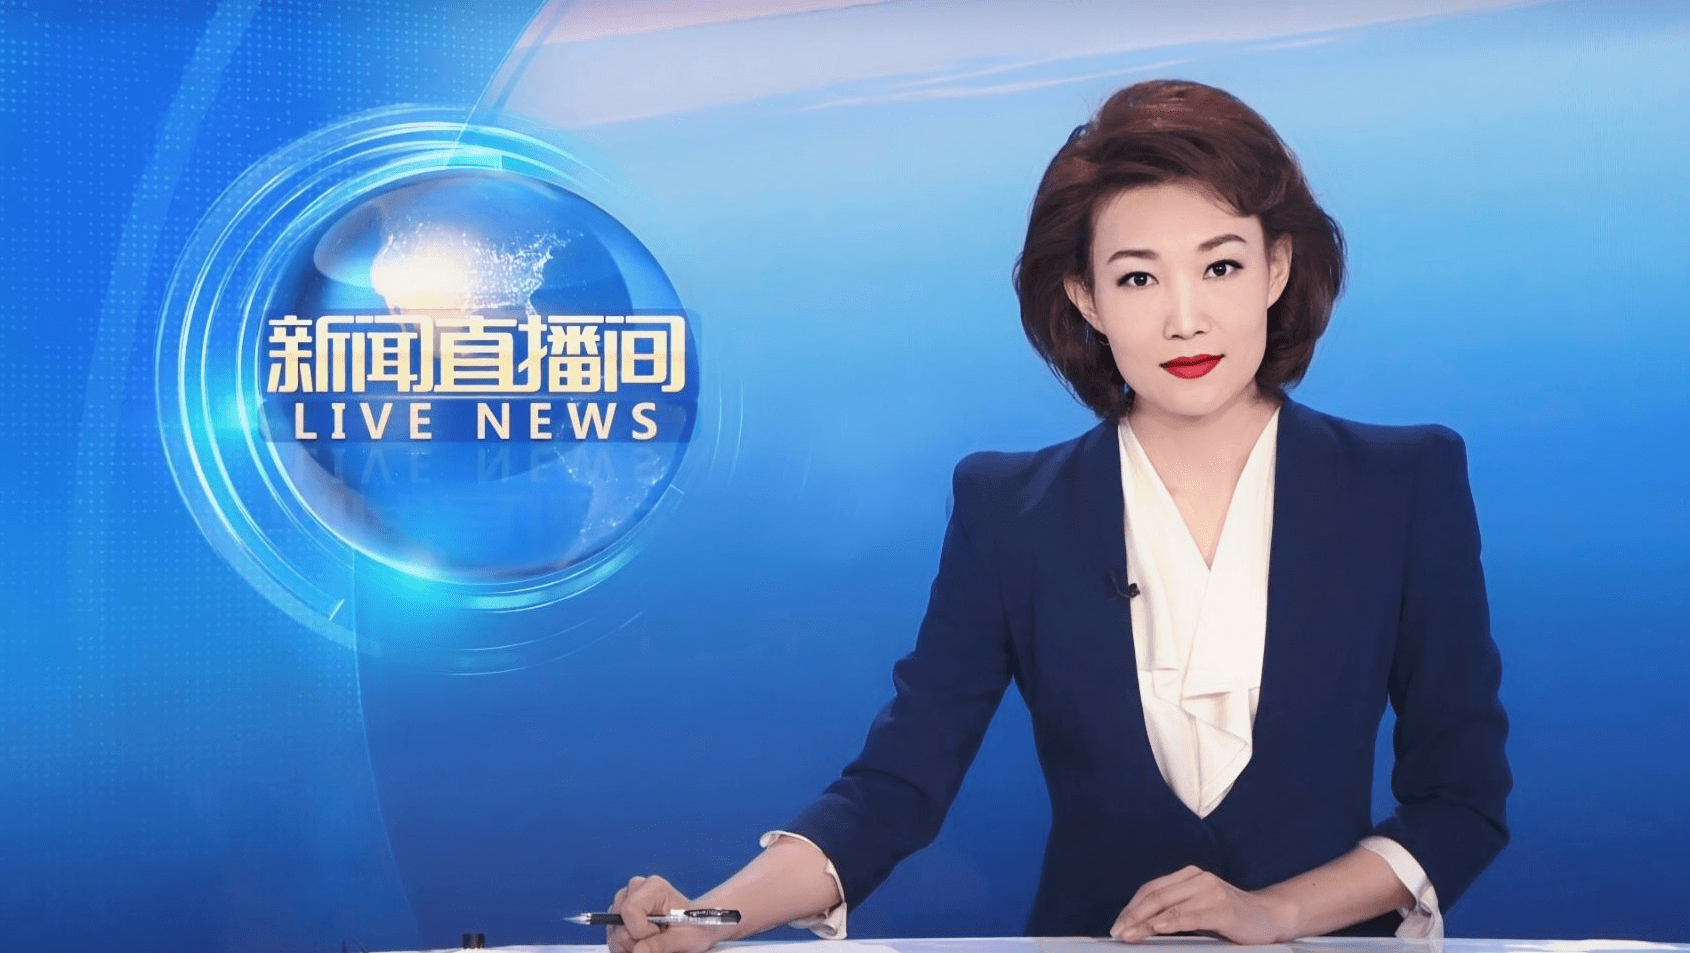 央视女记者王冰冰意外走红,竟是因为符合了直男审美的初恋脸?